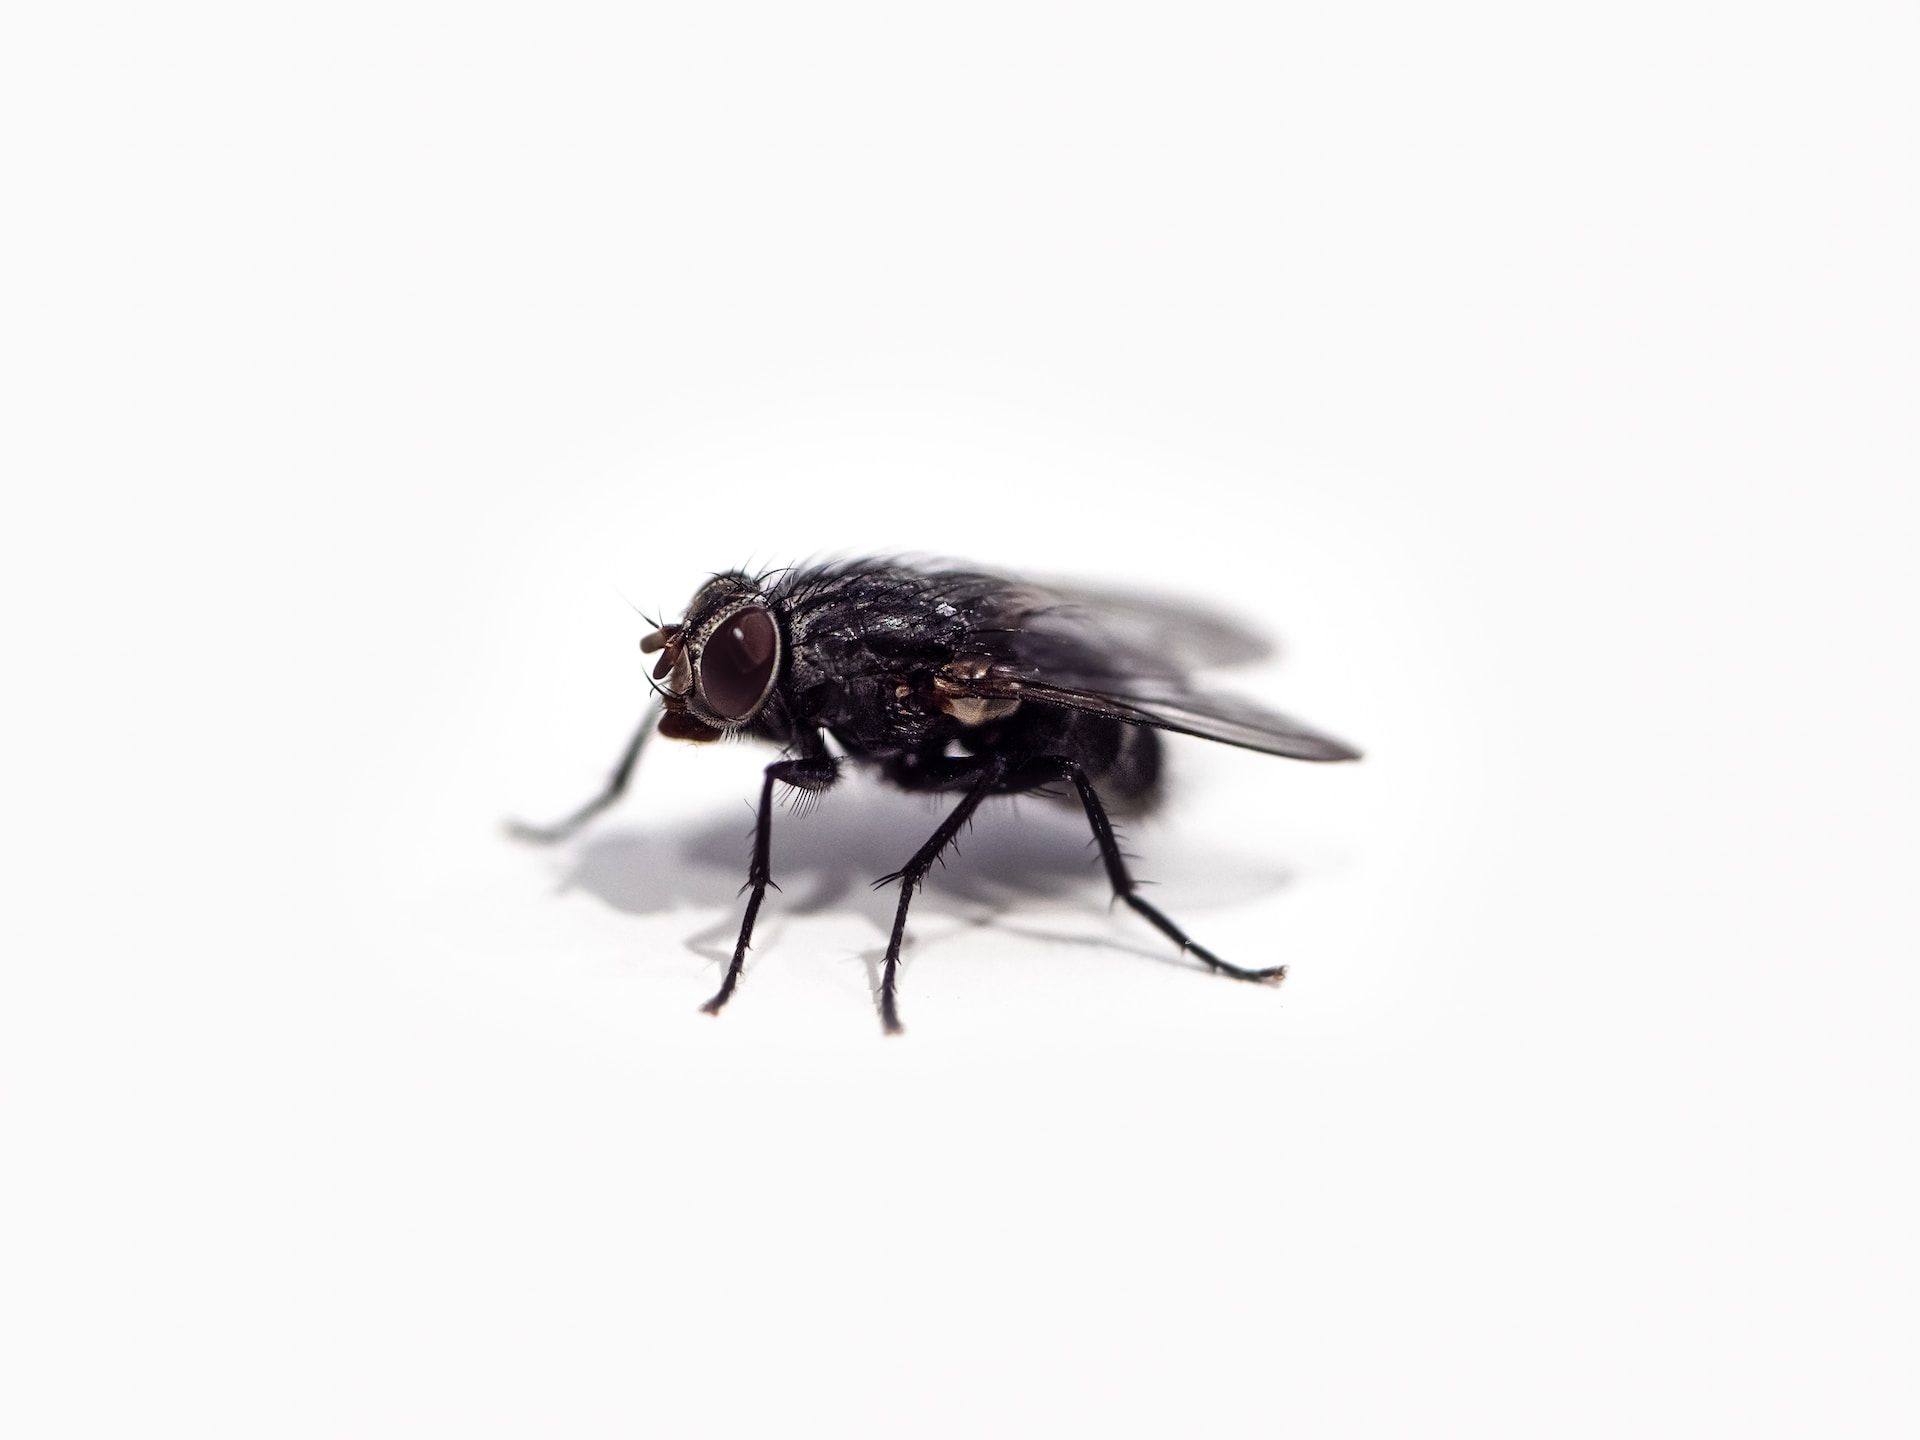 Гадко, но действенно: личинки мух помогли вылечить язву - Здоровье 24